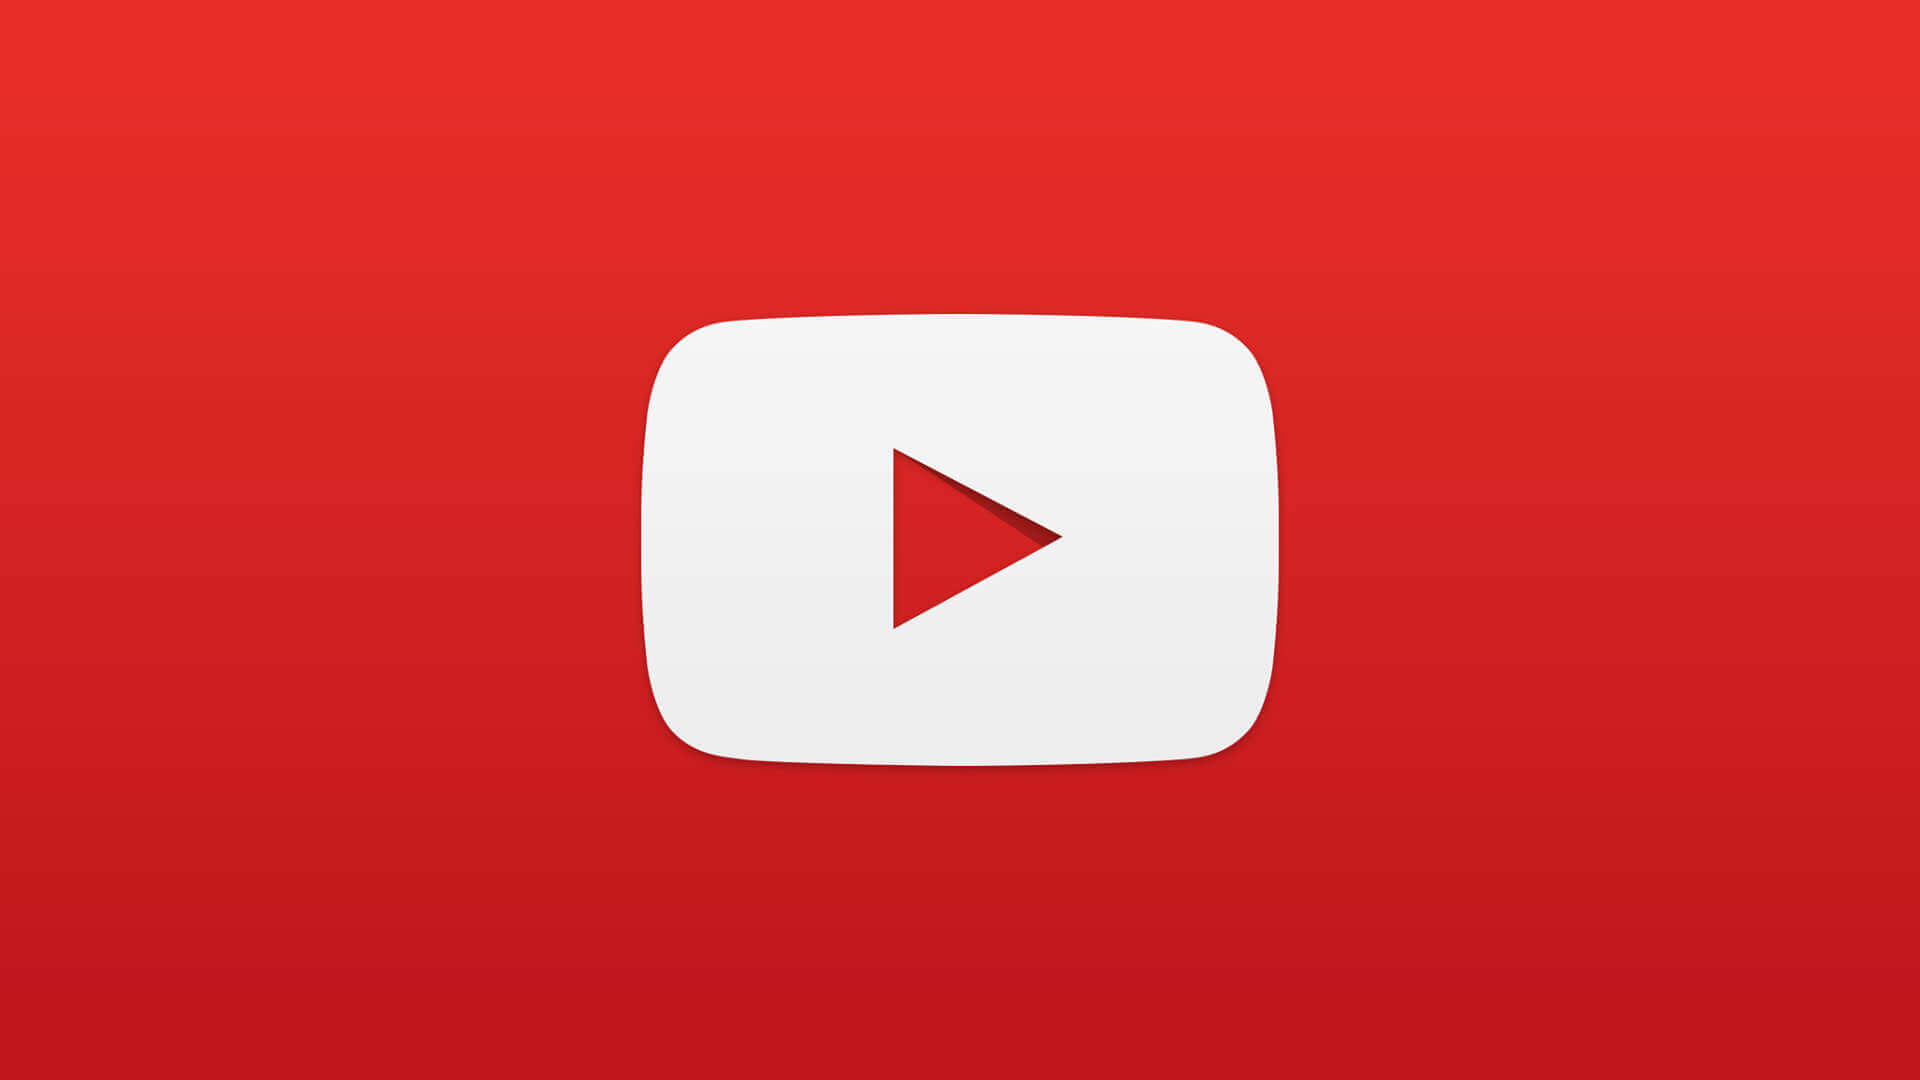 Sťahovanie videí cez YouTube